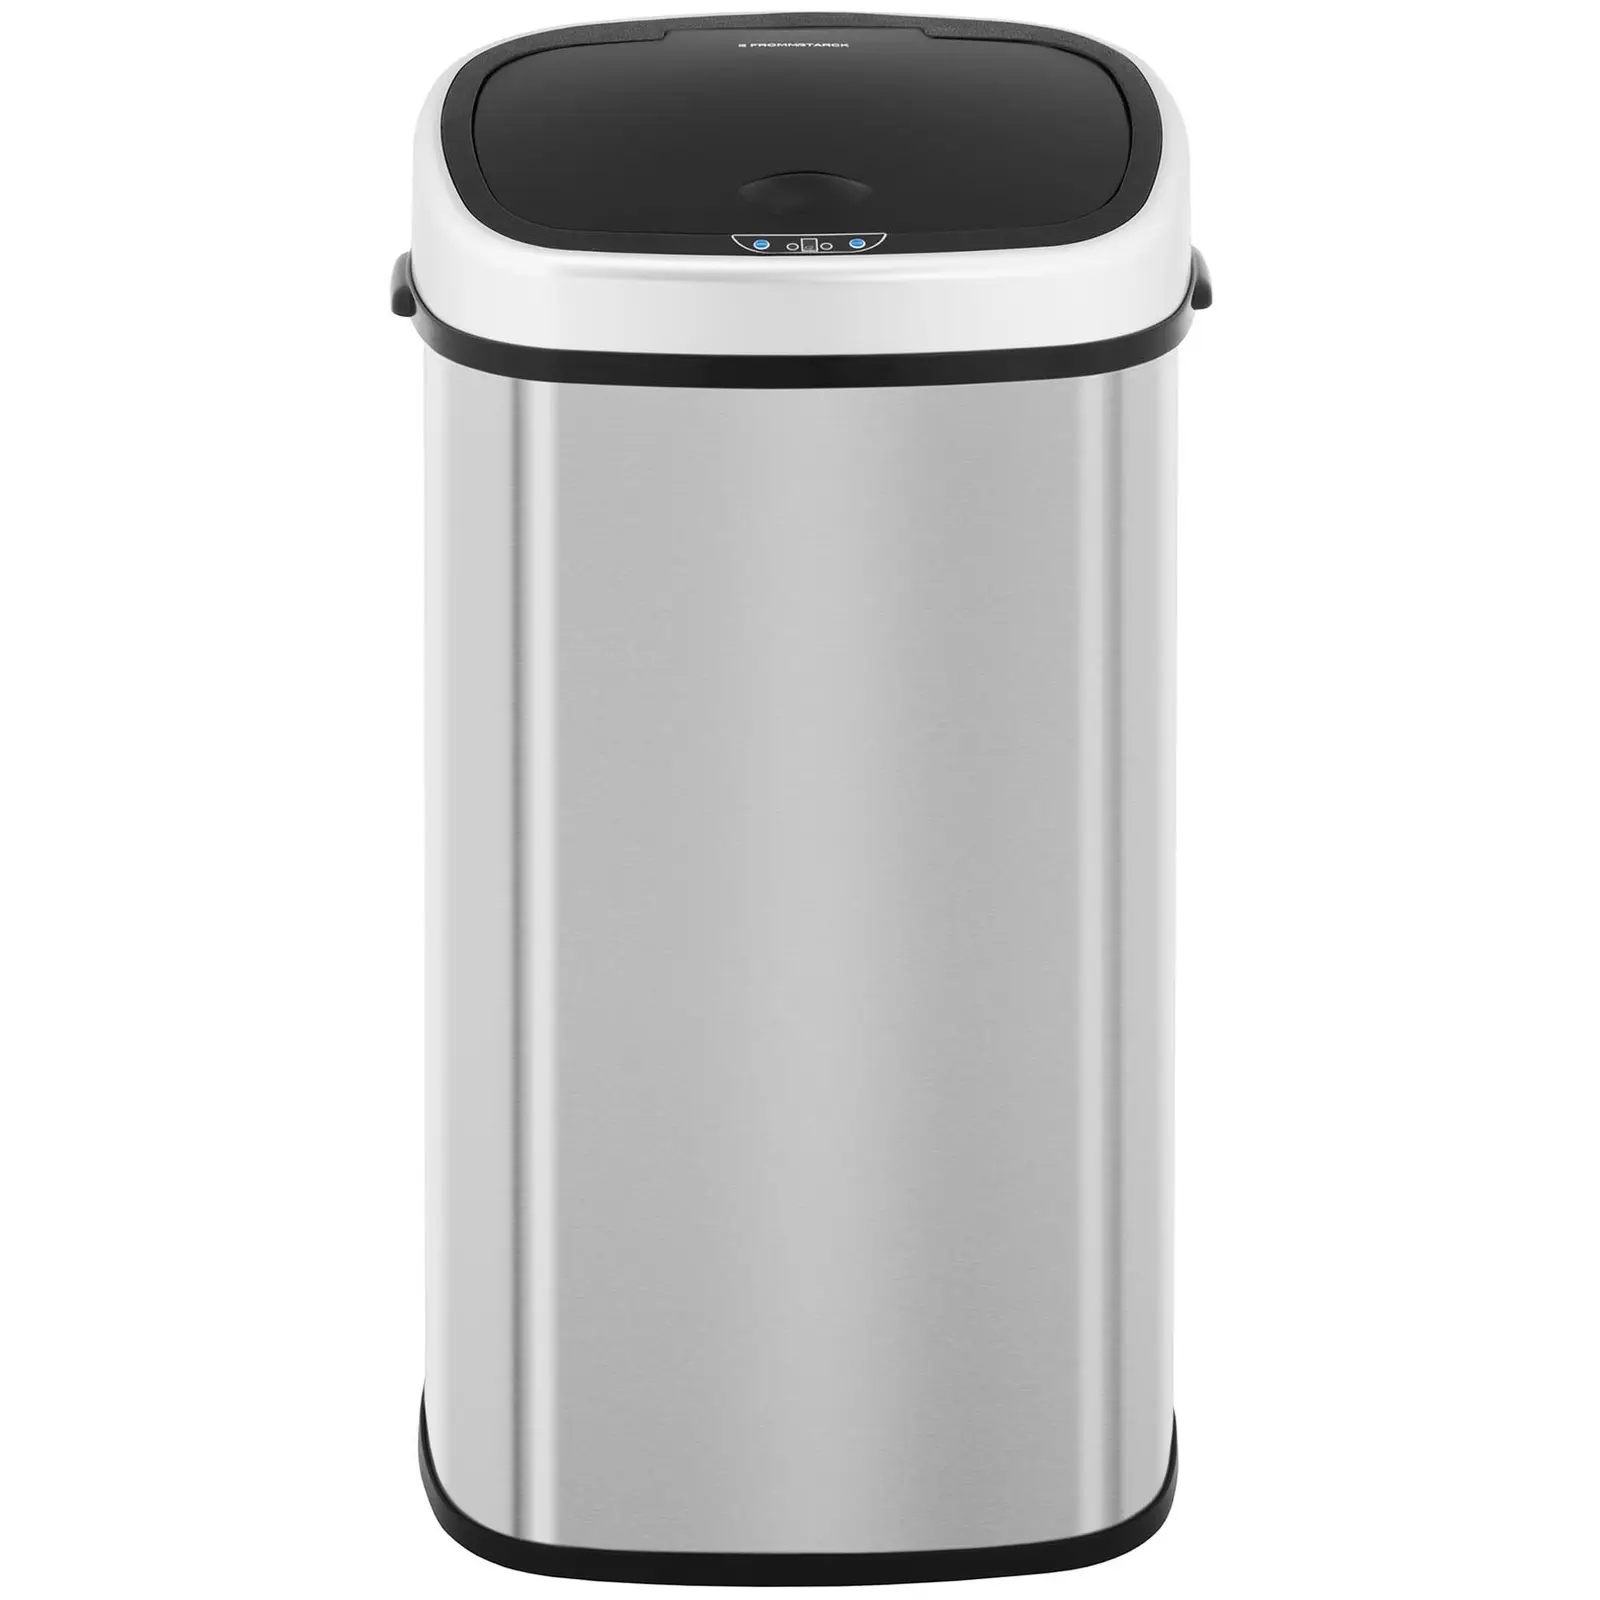 Automaattinen roska-astia - 58 litraa - kulmikas